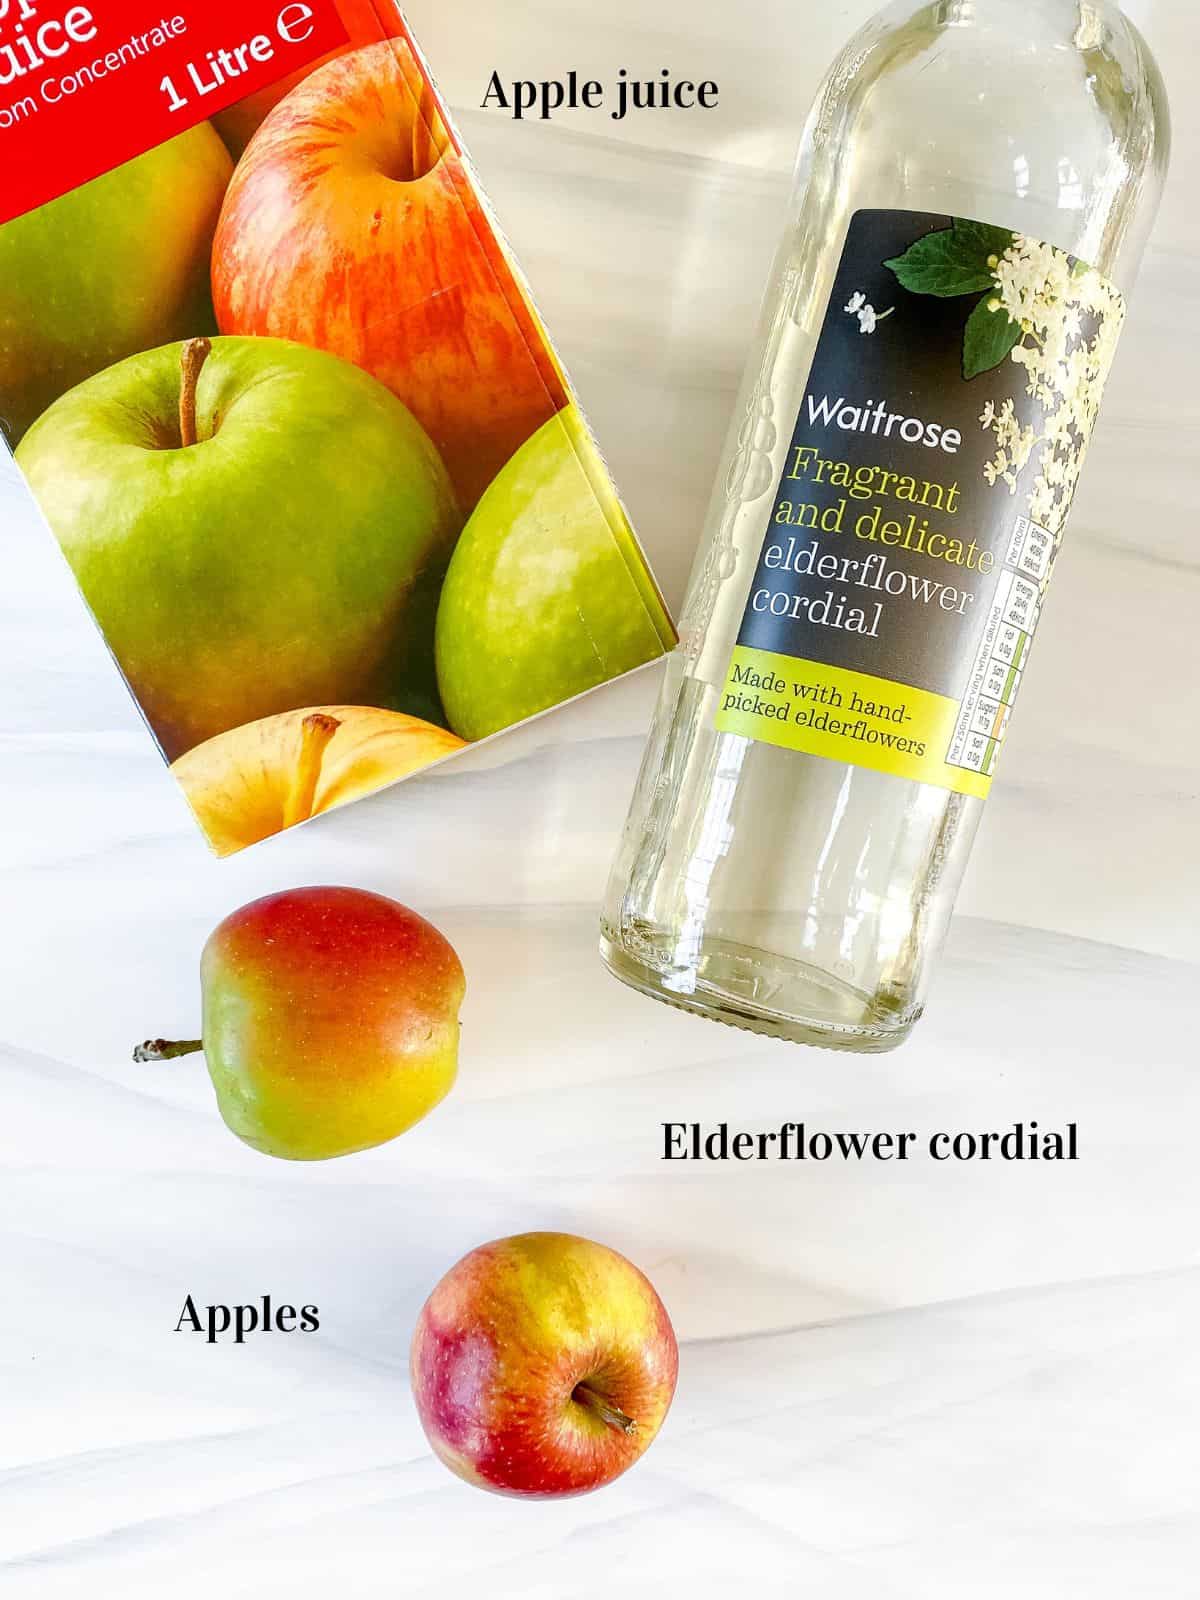 carton of apple juice, elderflower cordial and apples.